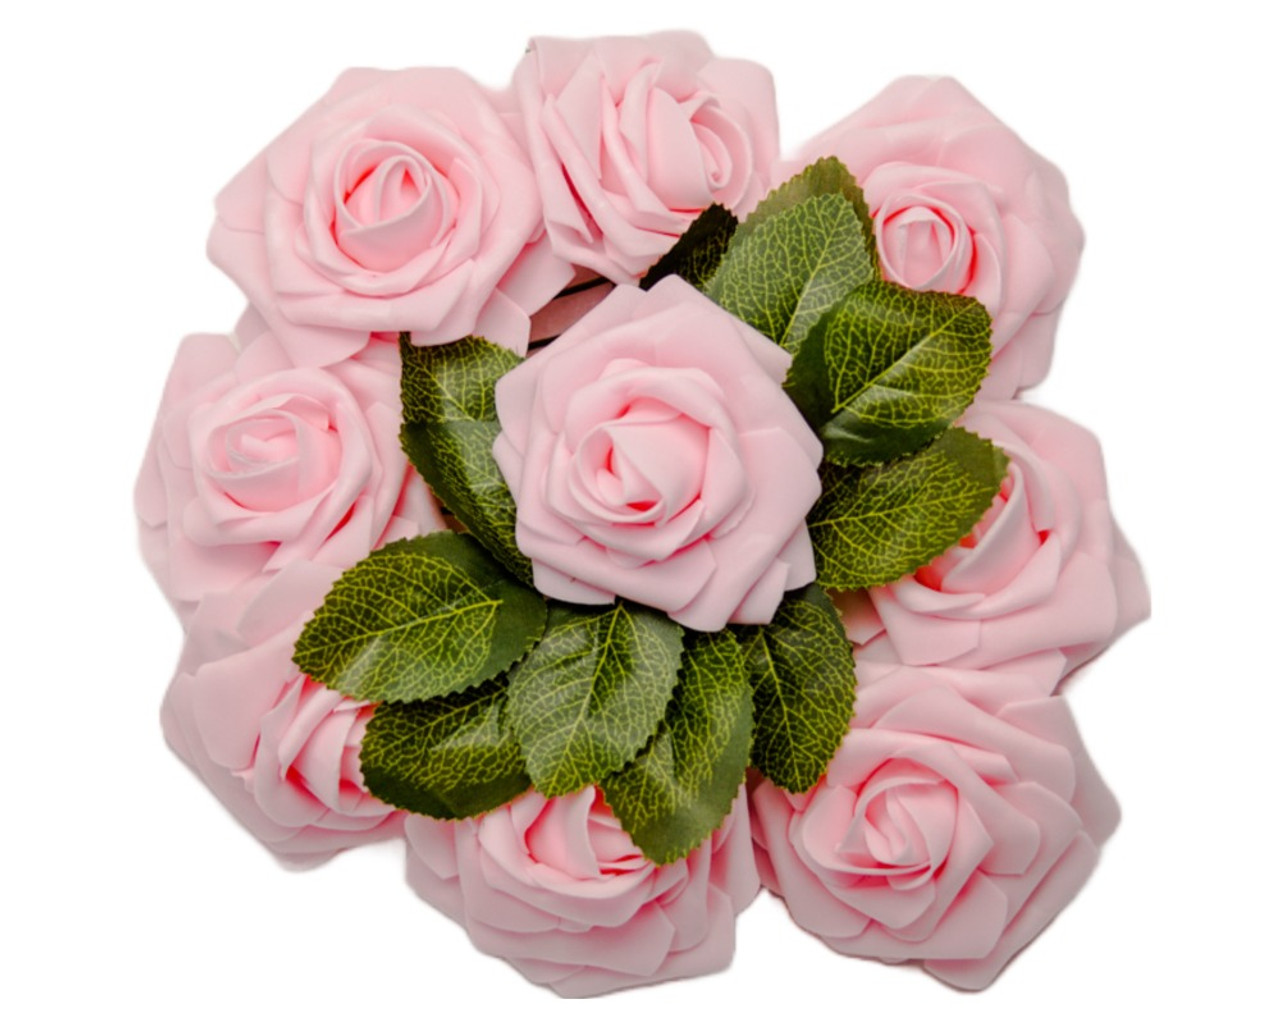 Floral Stem Wrap Tape Florist Tape Bouquet Corsage Supplies 2